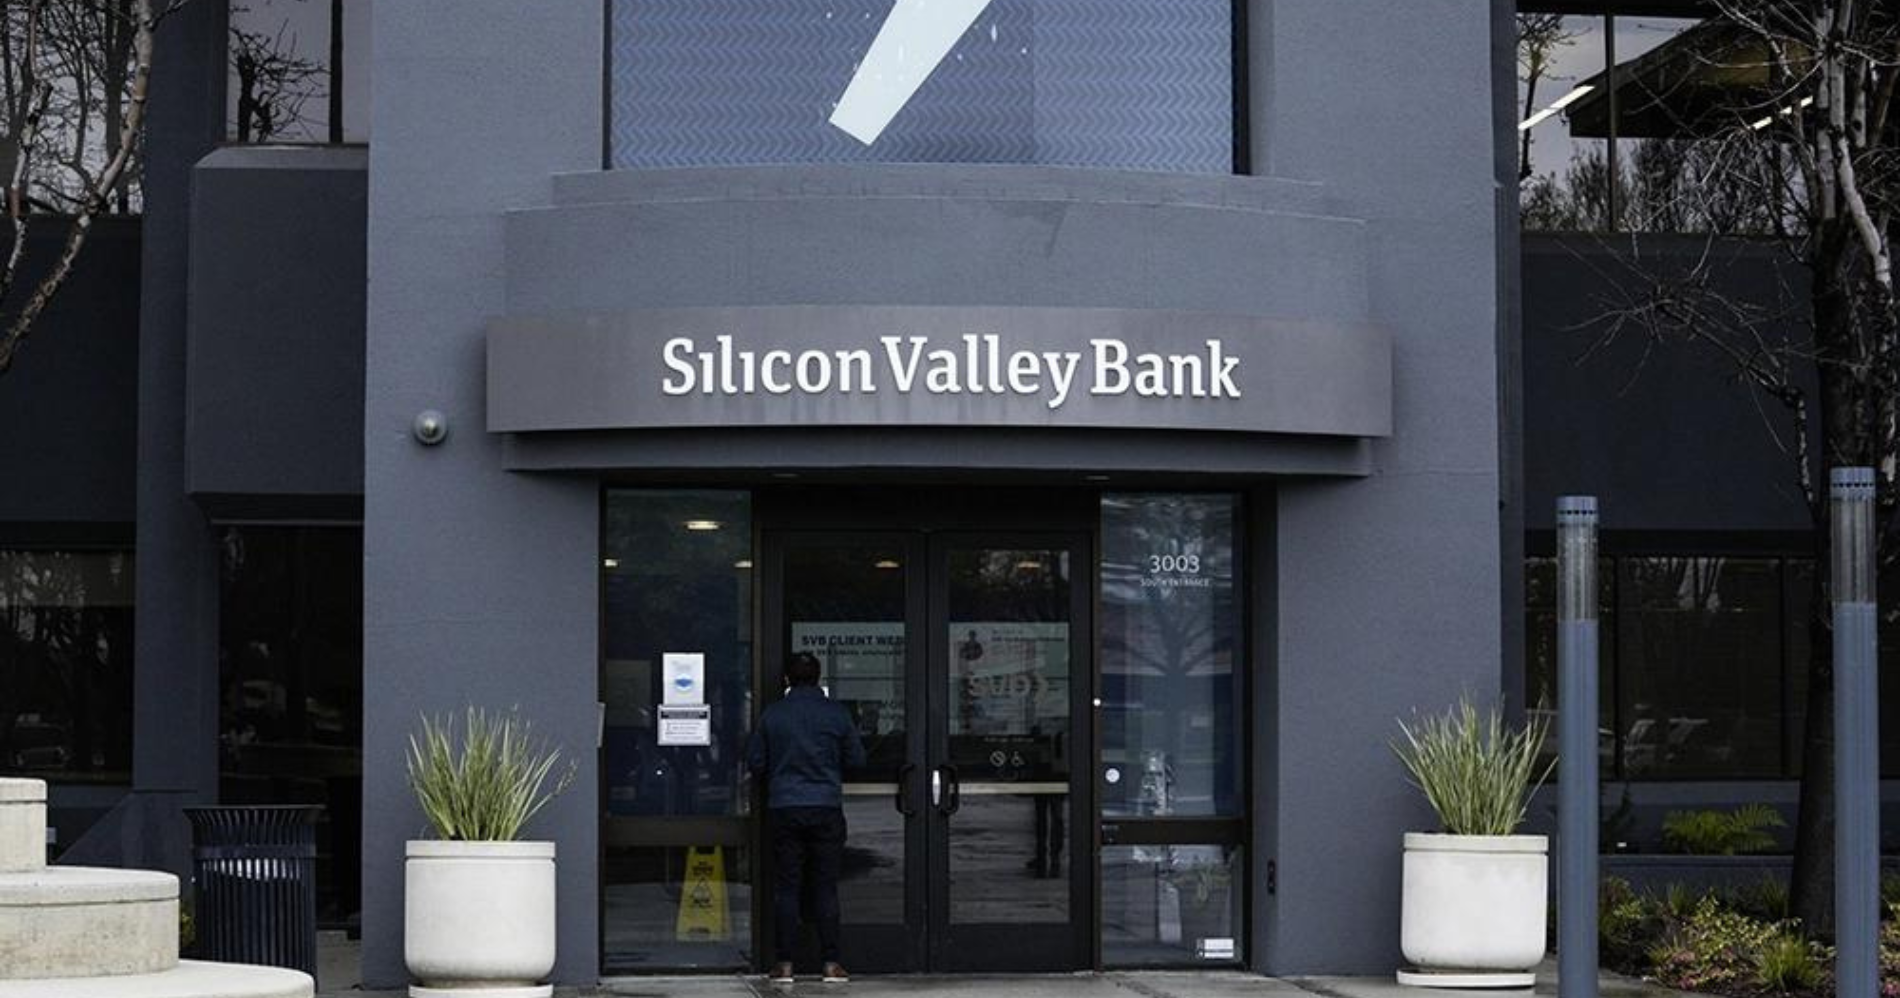 Daftar Perusahaan yang Terdampak Silicon Valley Bank Bangkrut (Foto: Bisnis.com)